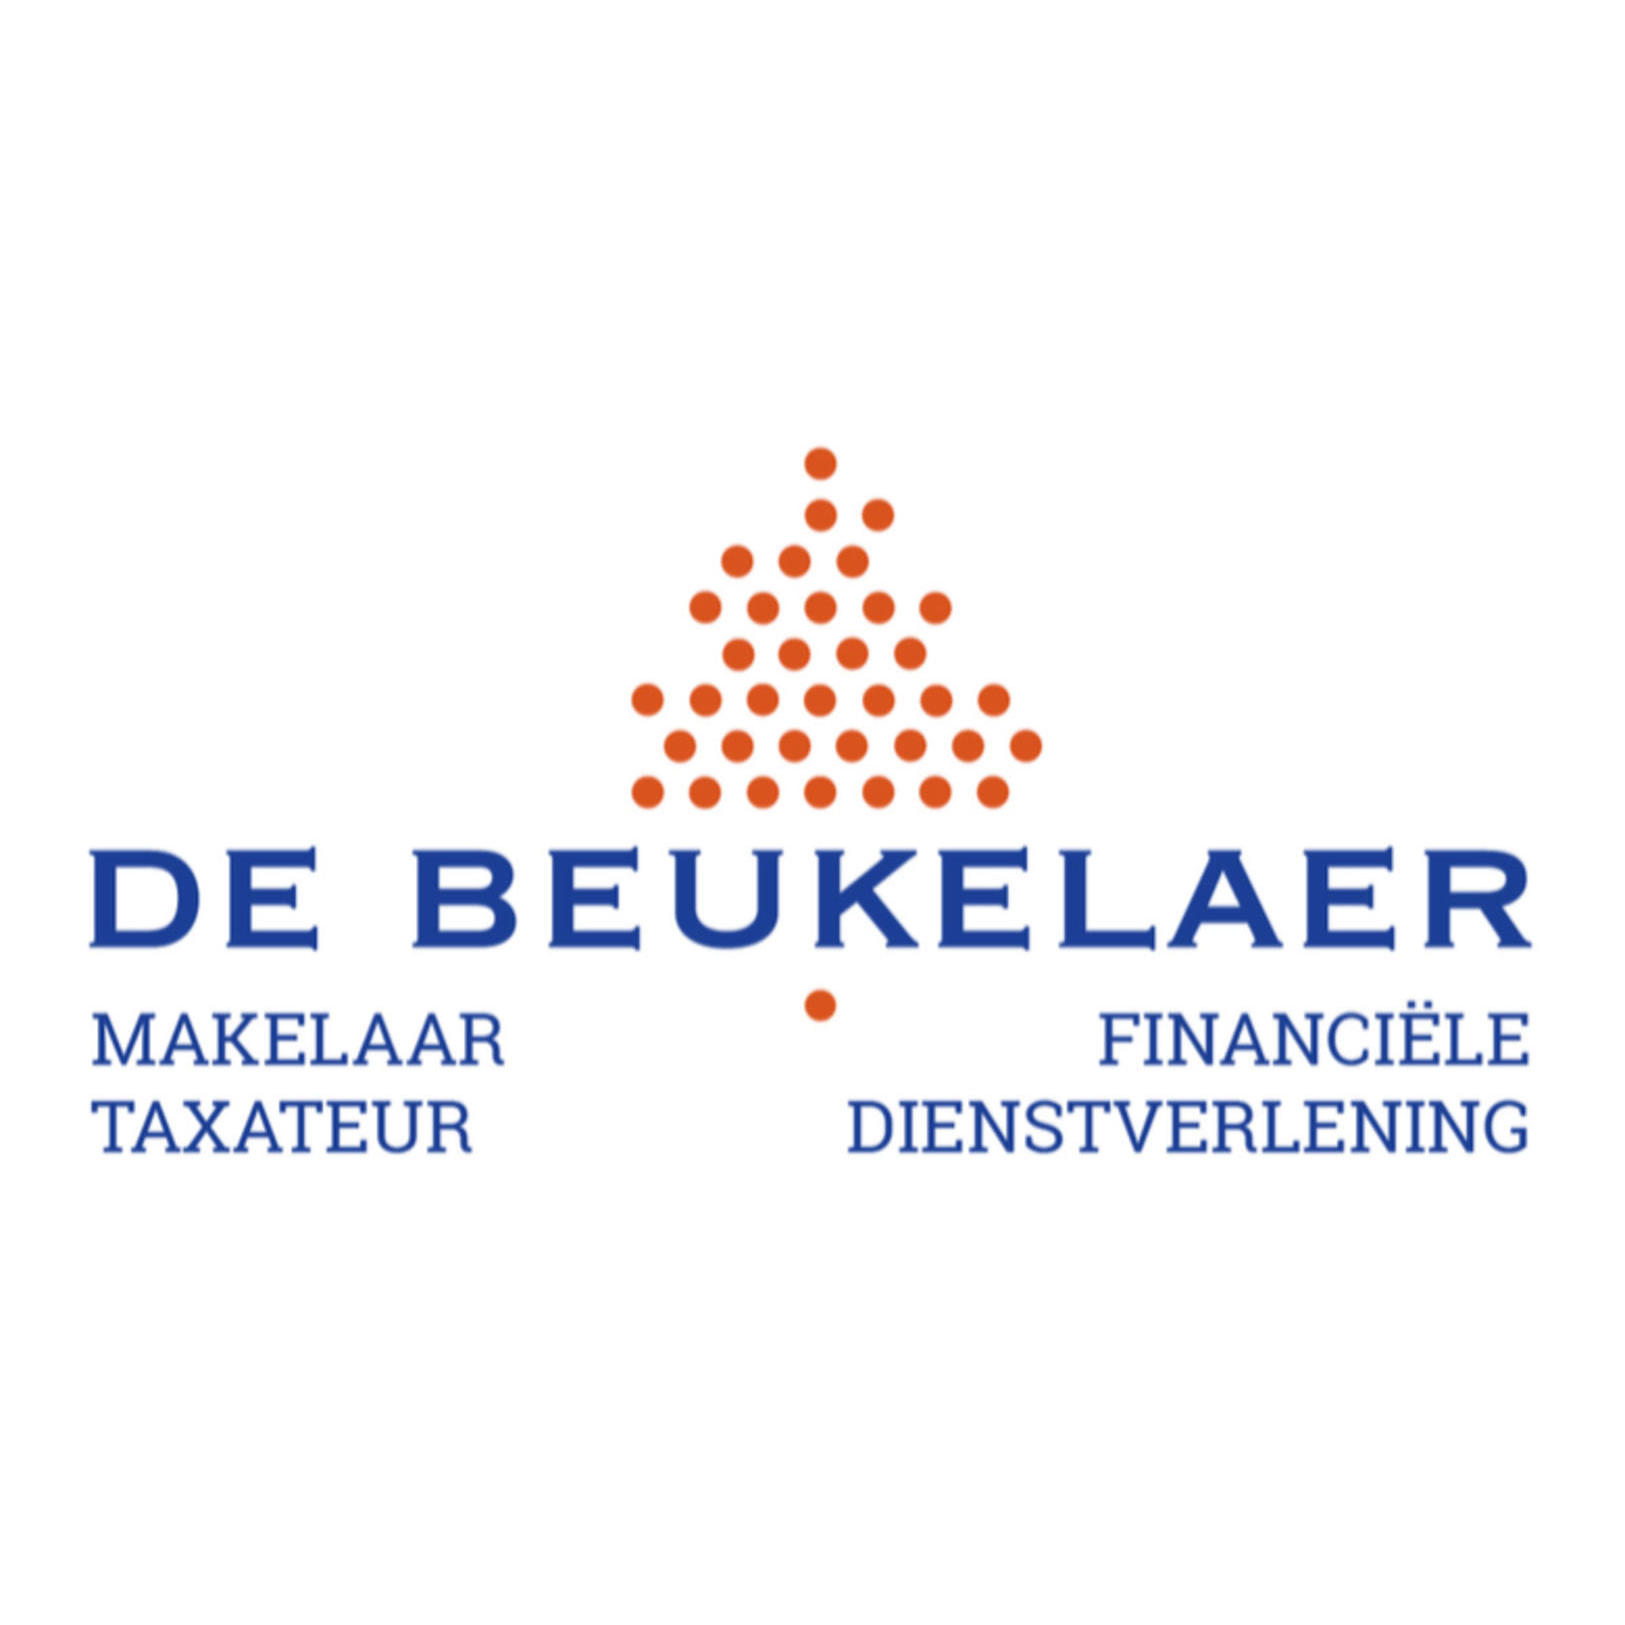 De Beukelaer Makelaardij en Financial Consultants Logo